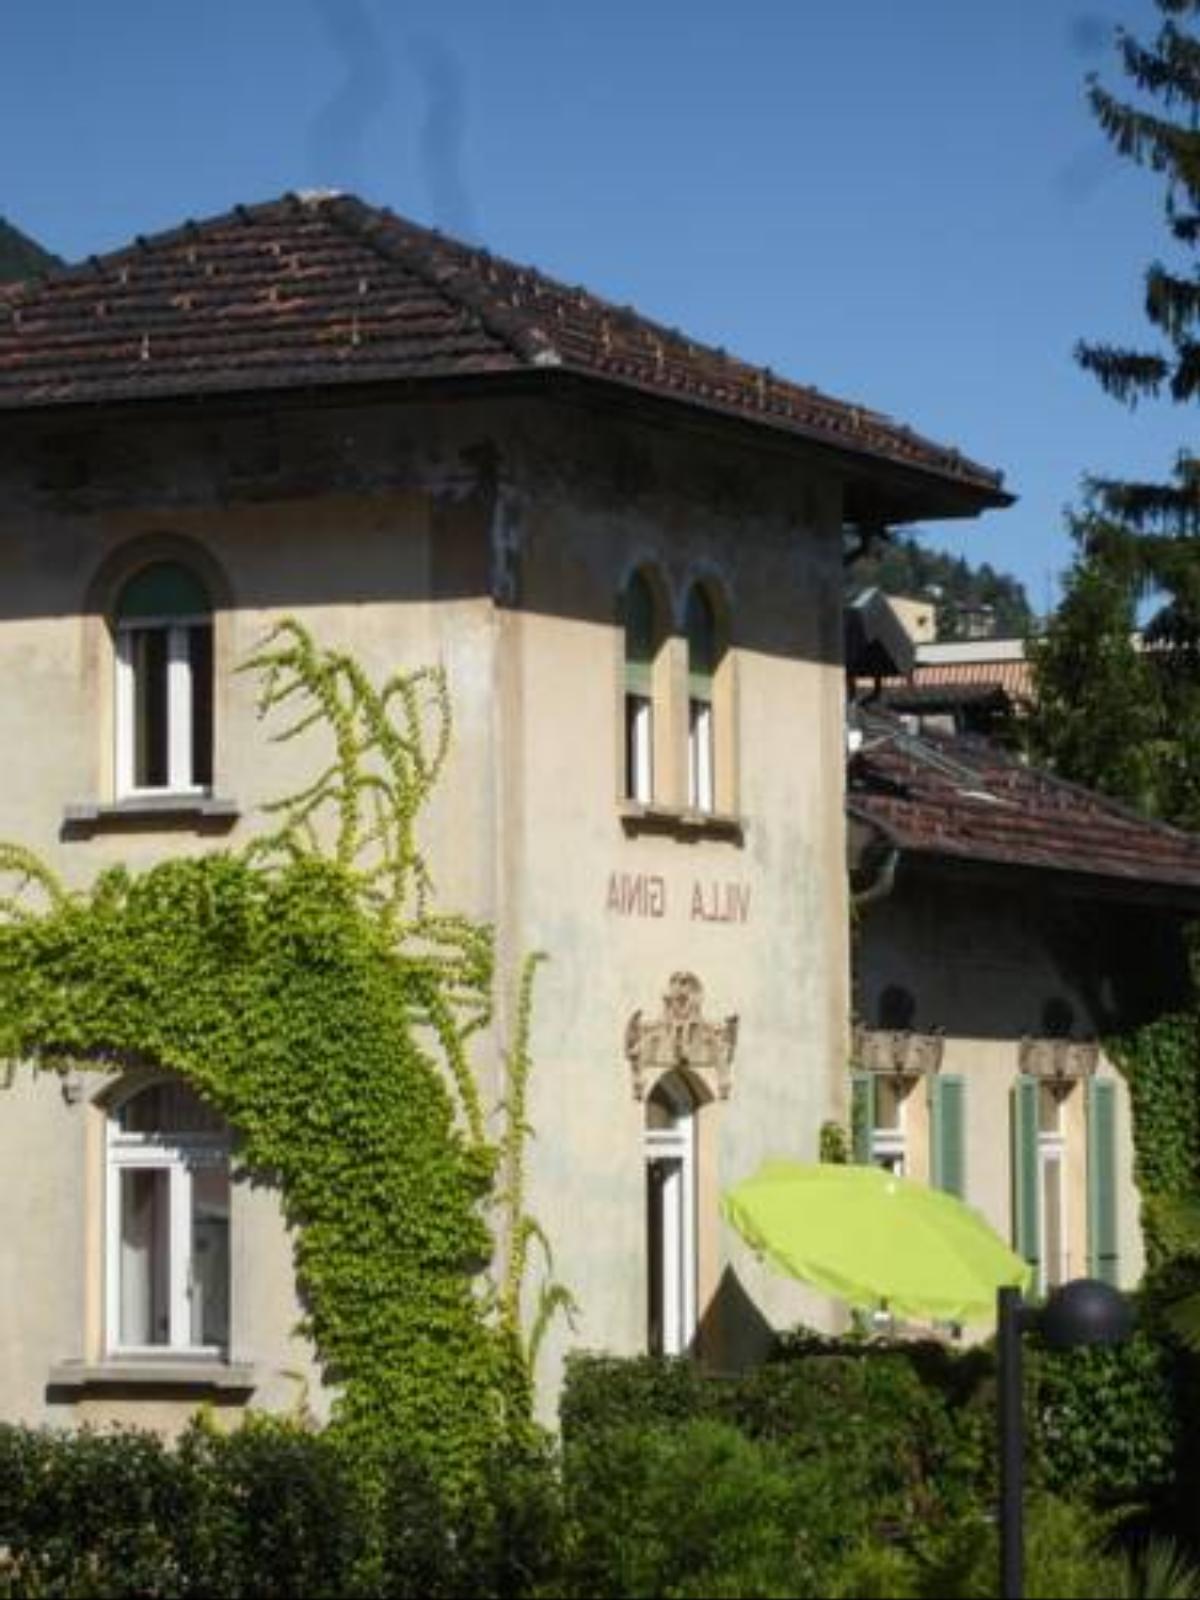 Villa Ginia Hotel Locarno Switzerland